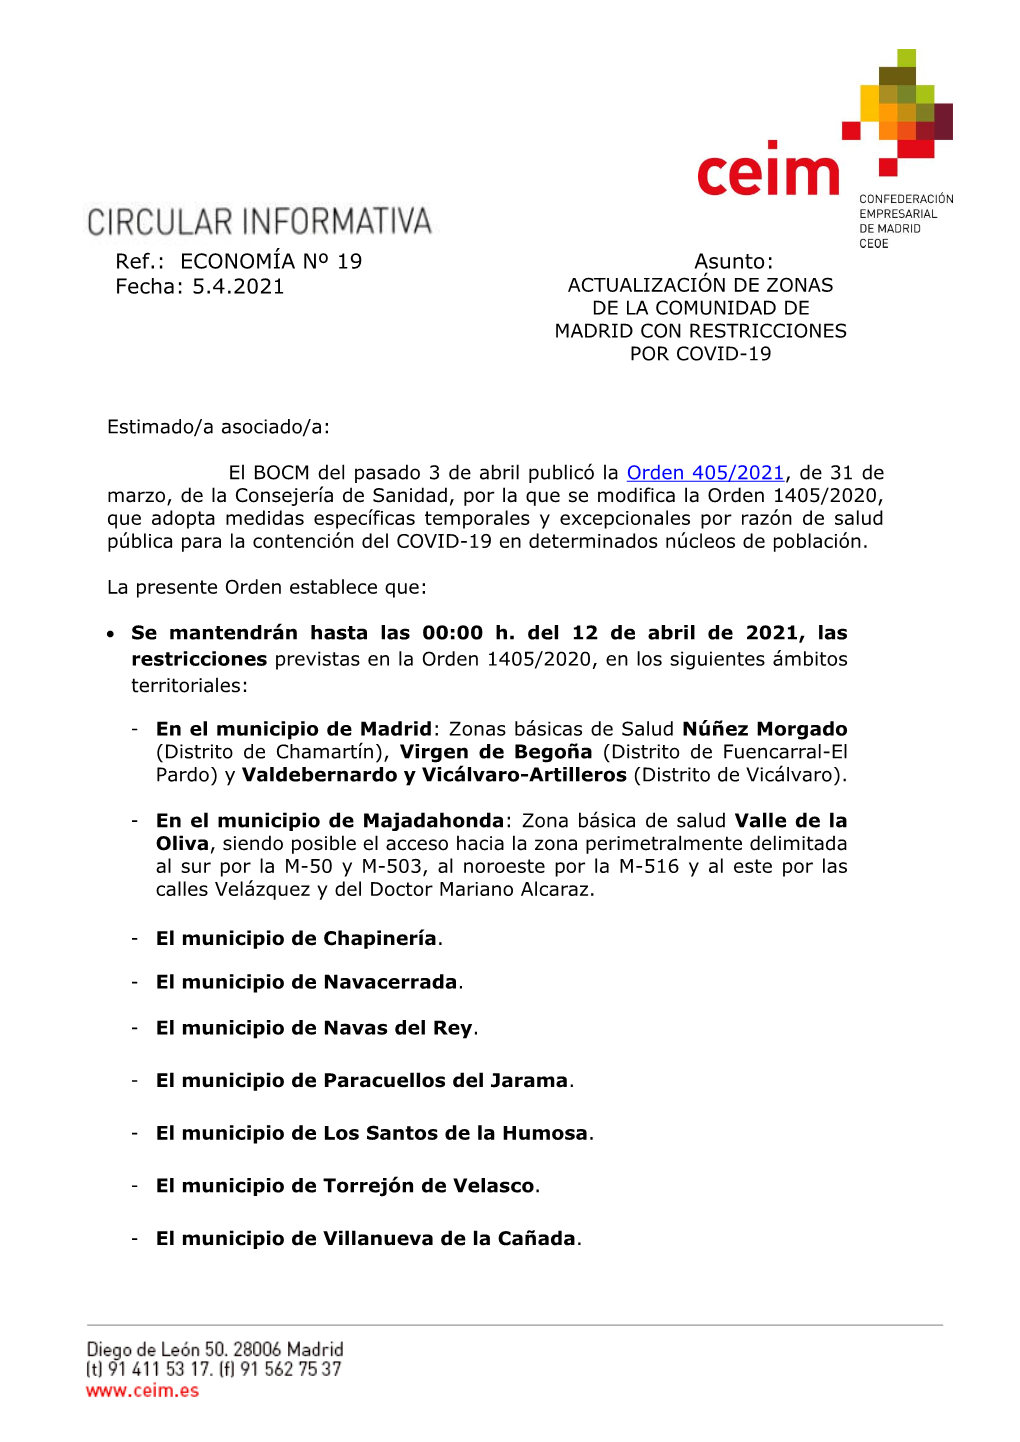 Actualización De Zonas De La Comunidad De Madrid Con Restricciones Por Covid-19